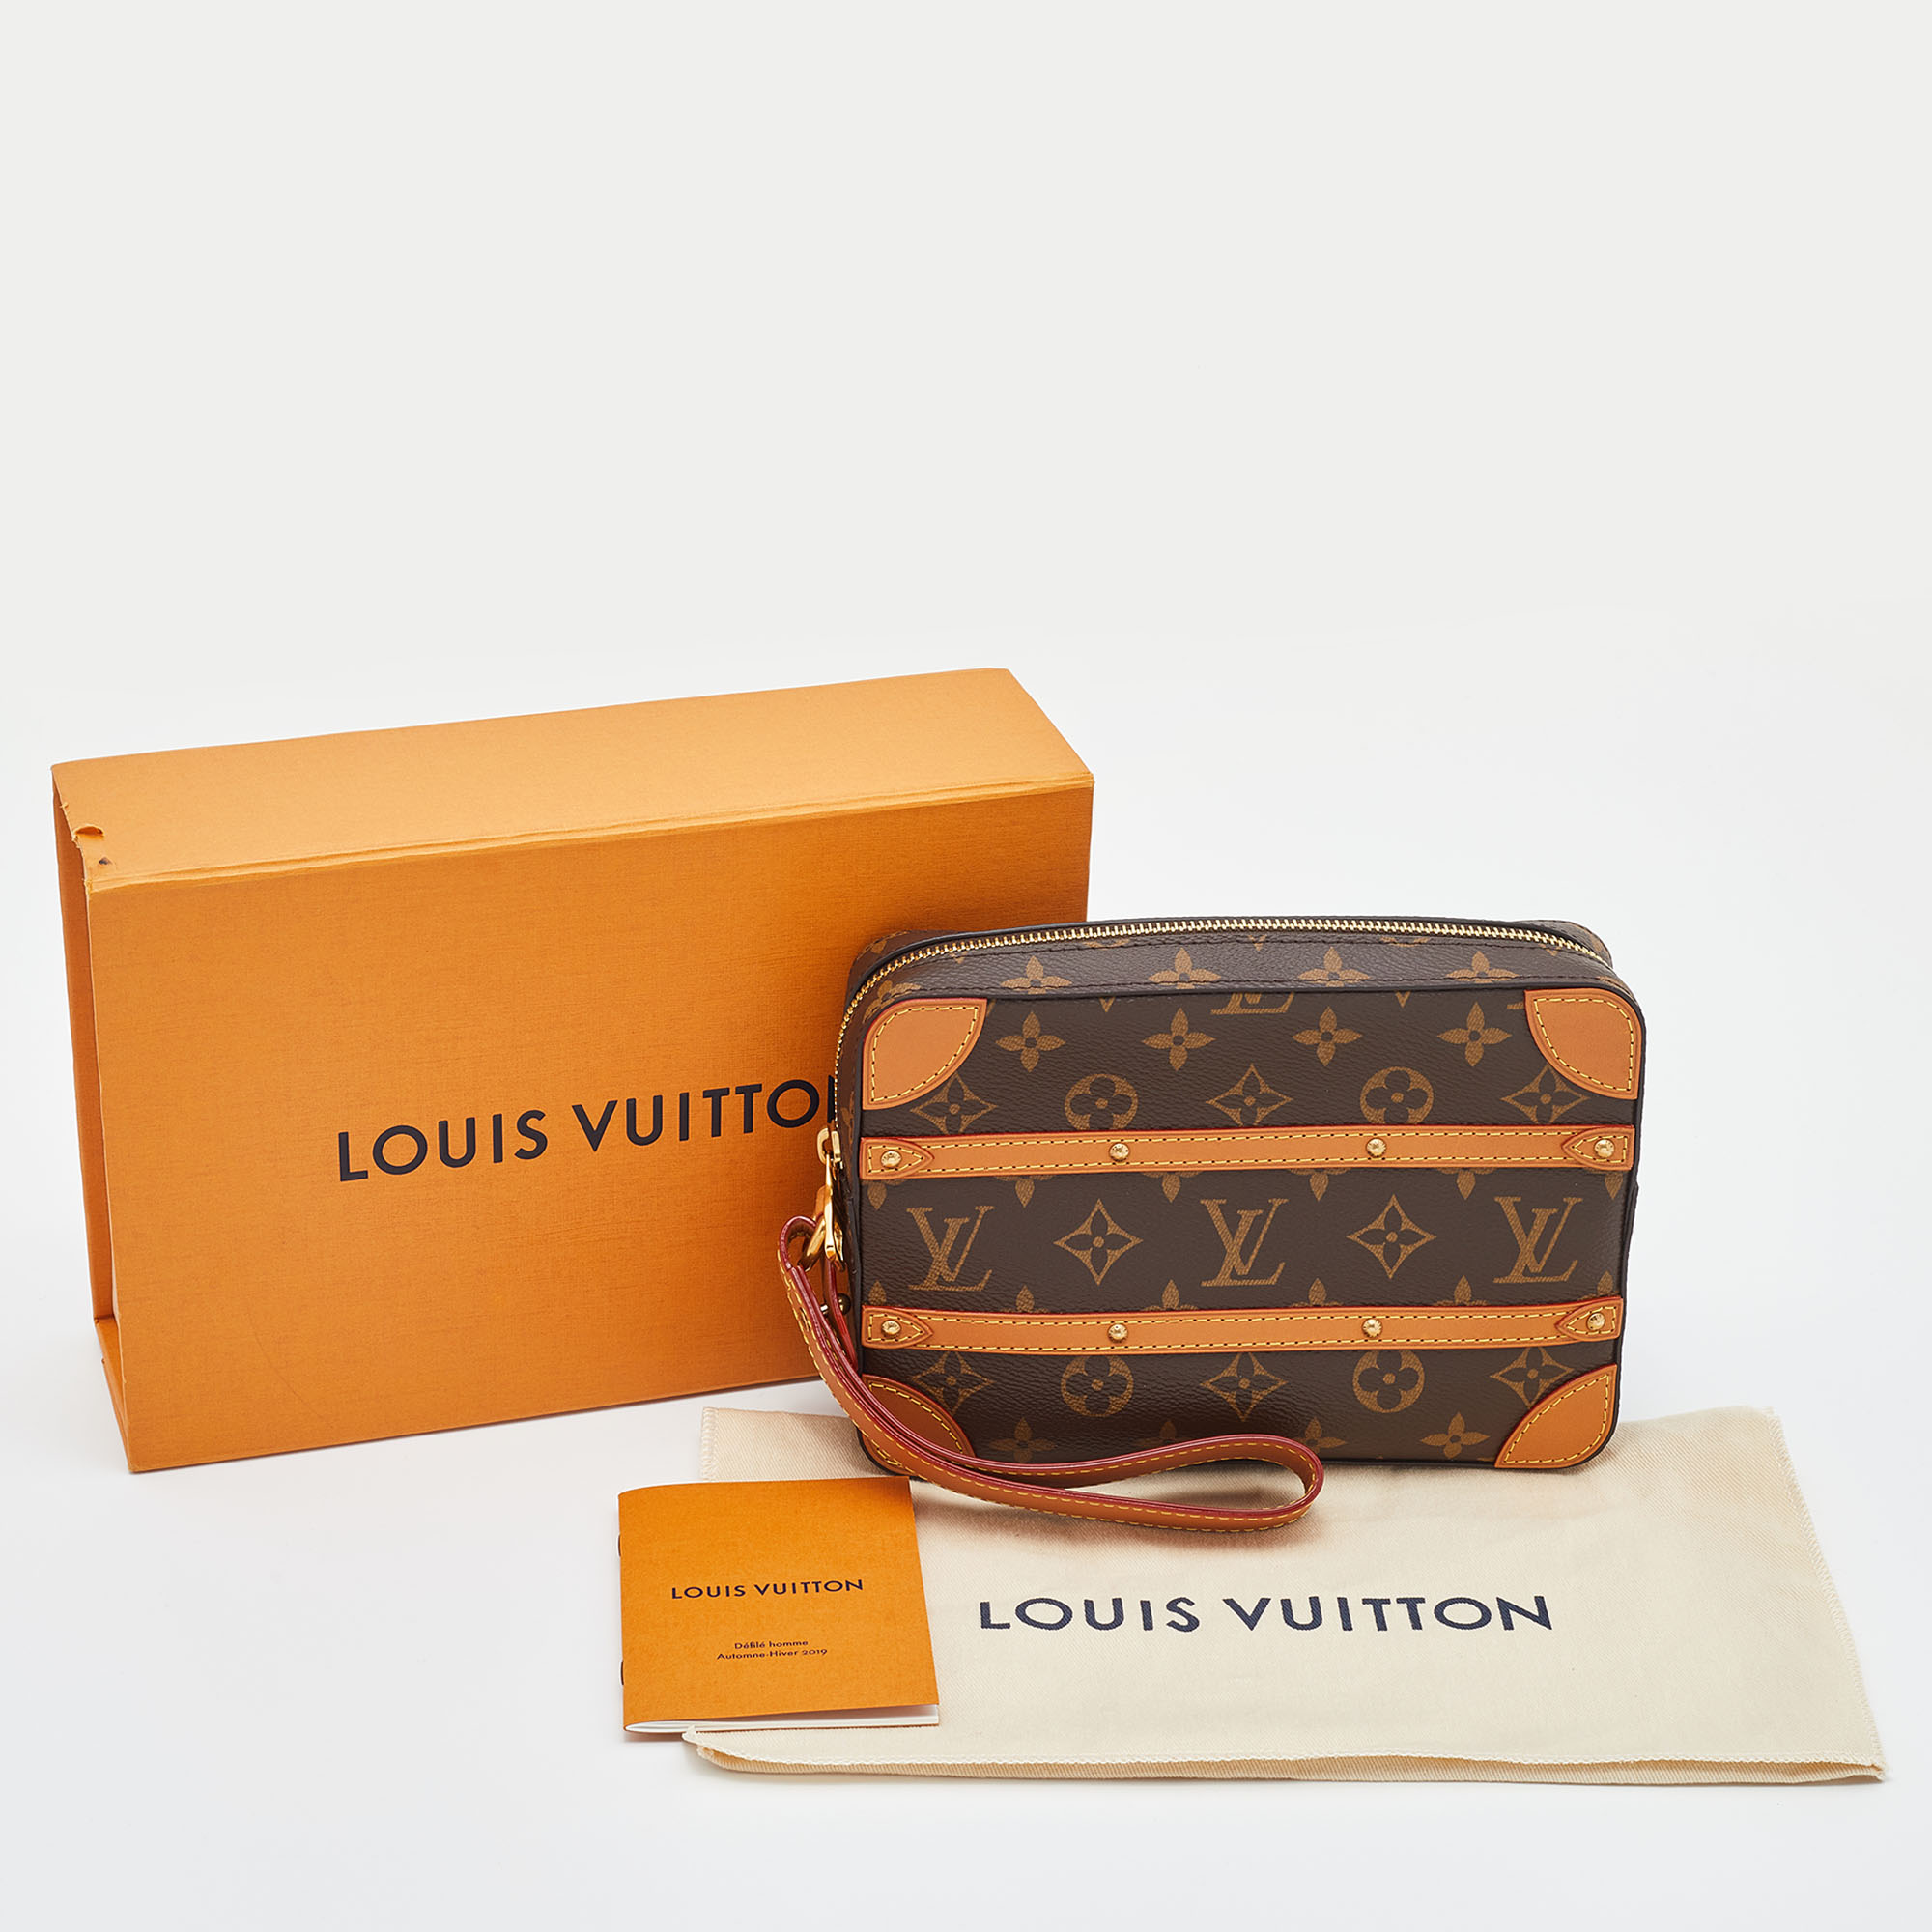 Louis Vuitton Monogram Canvas Soft Trunk Pouch